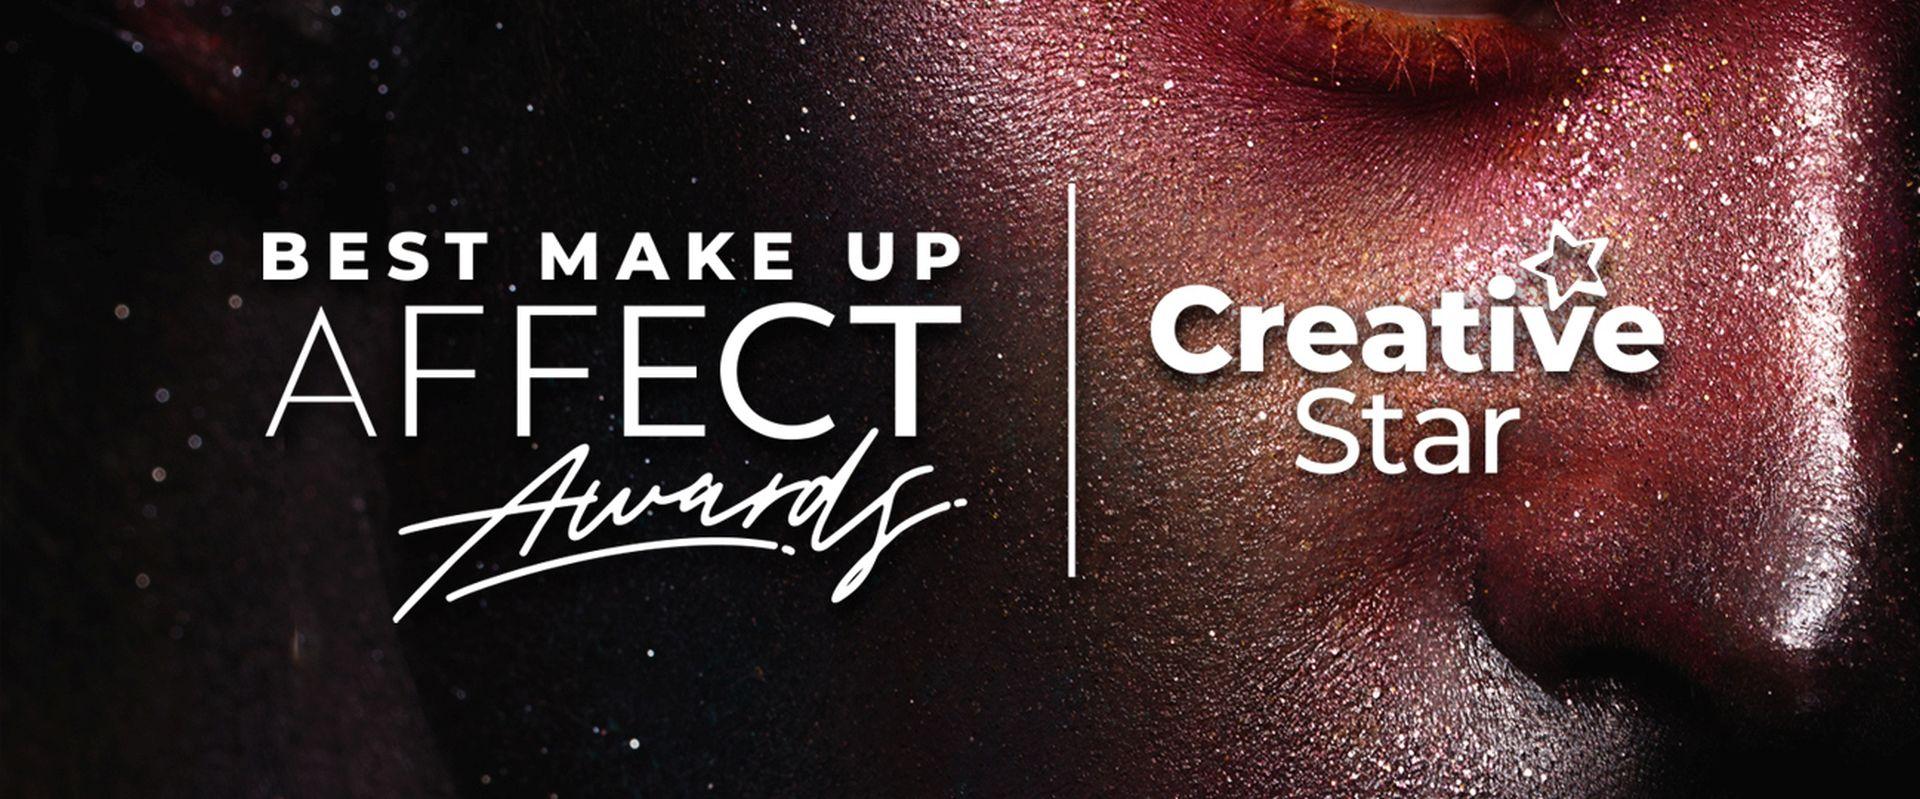 Ruszyła pierwsza edycja ogólnopolskiego konkursu Best Make Up AFFECT Awards organizowanego przez markę AFFECT